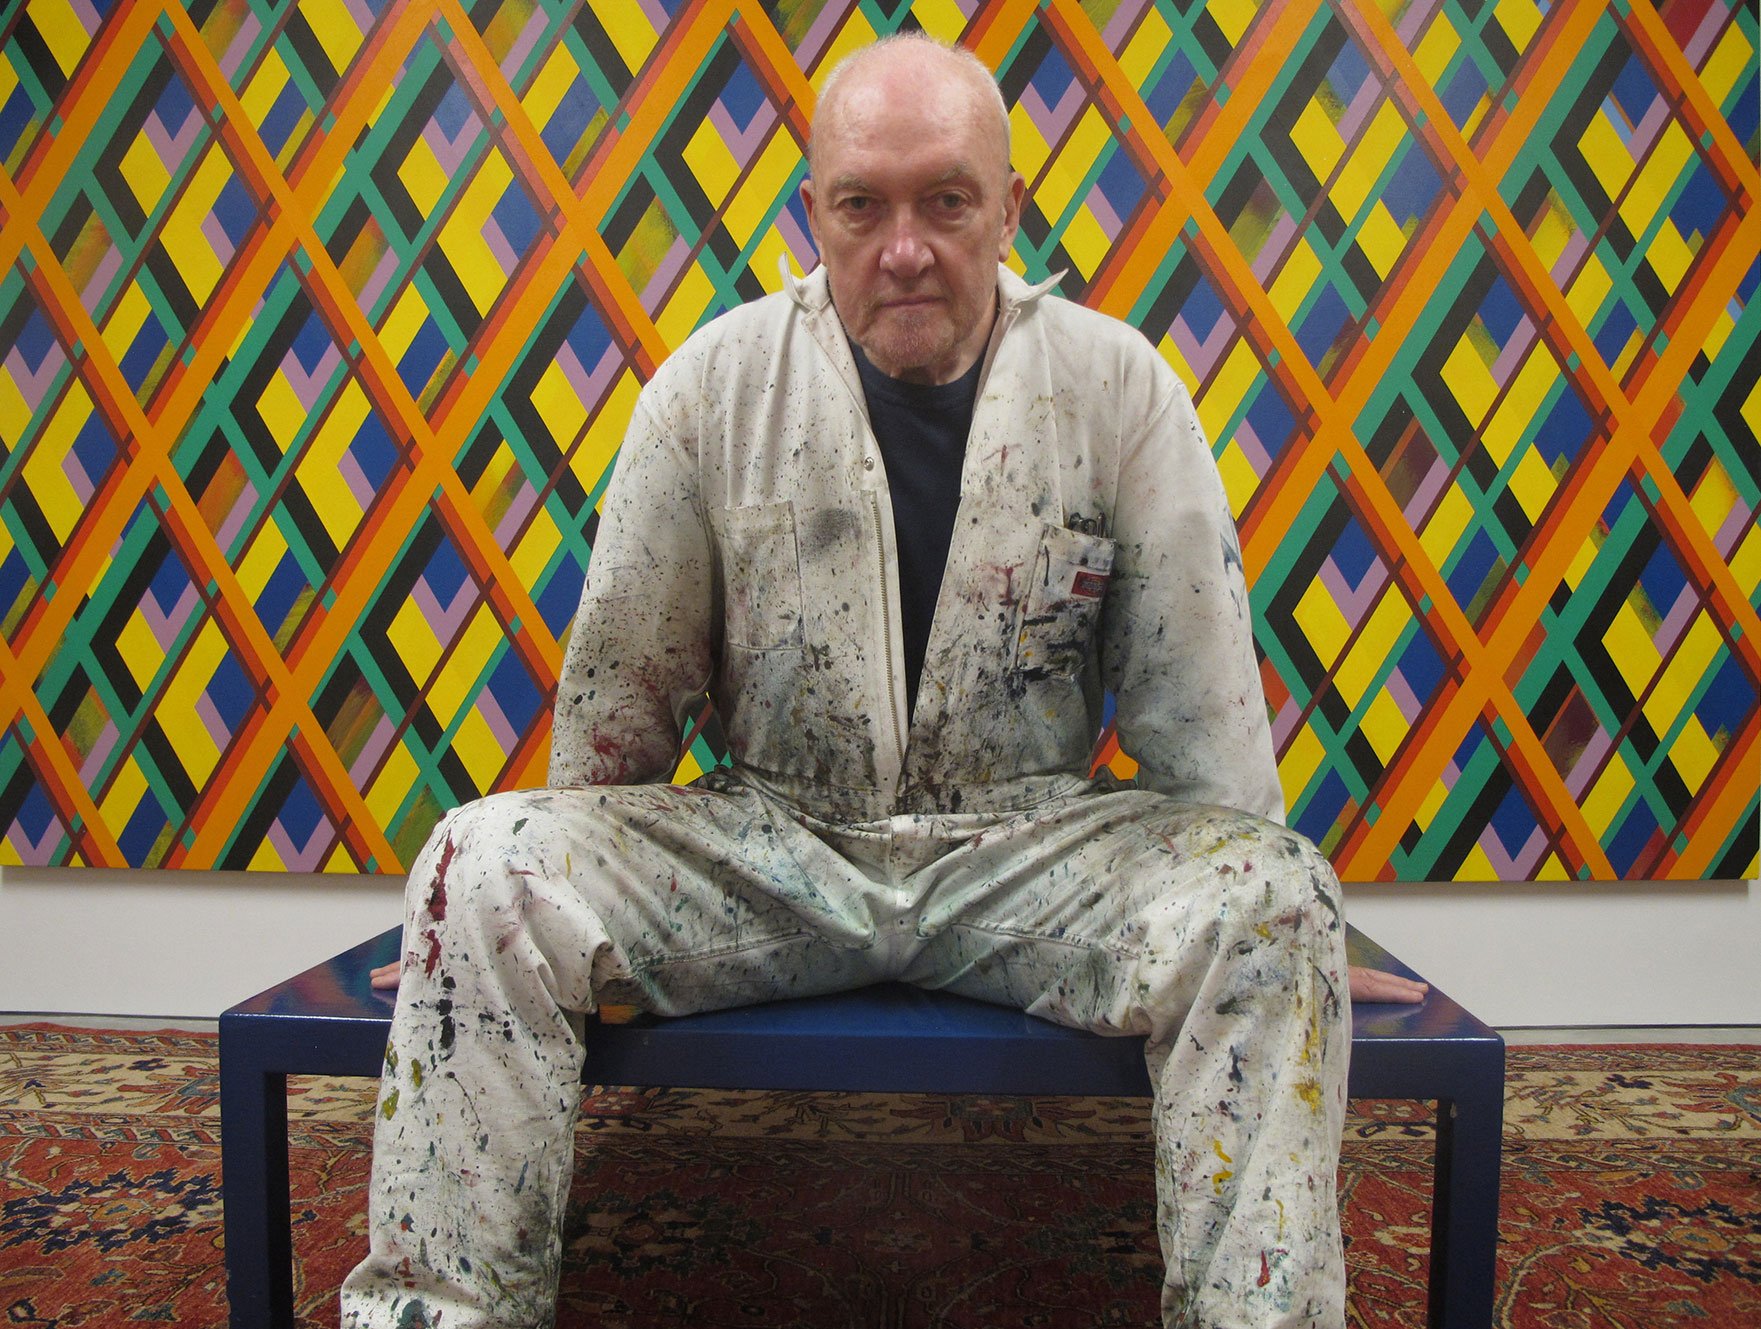 Der zeitgenössische Künstler Sean Scully sitzt ein einem mit Farbe beschmutzen Maler-Overall auf einer Bank vor seinem Werk Overlay 2. DasWerk zeigt diagonale bunte Linien, die zusammen eine Vielzahl von Rauten bilden.